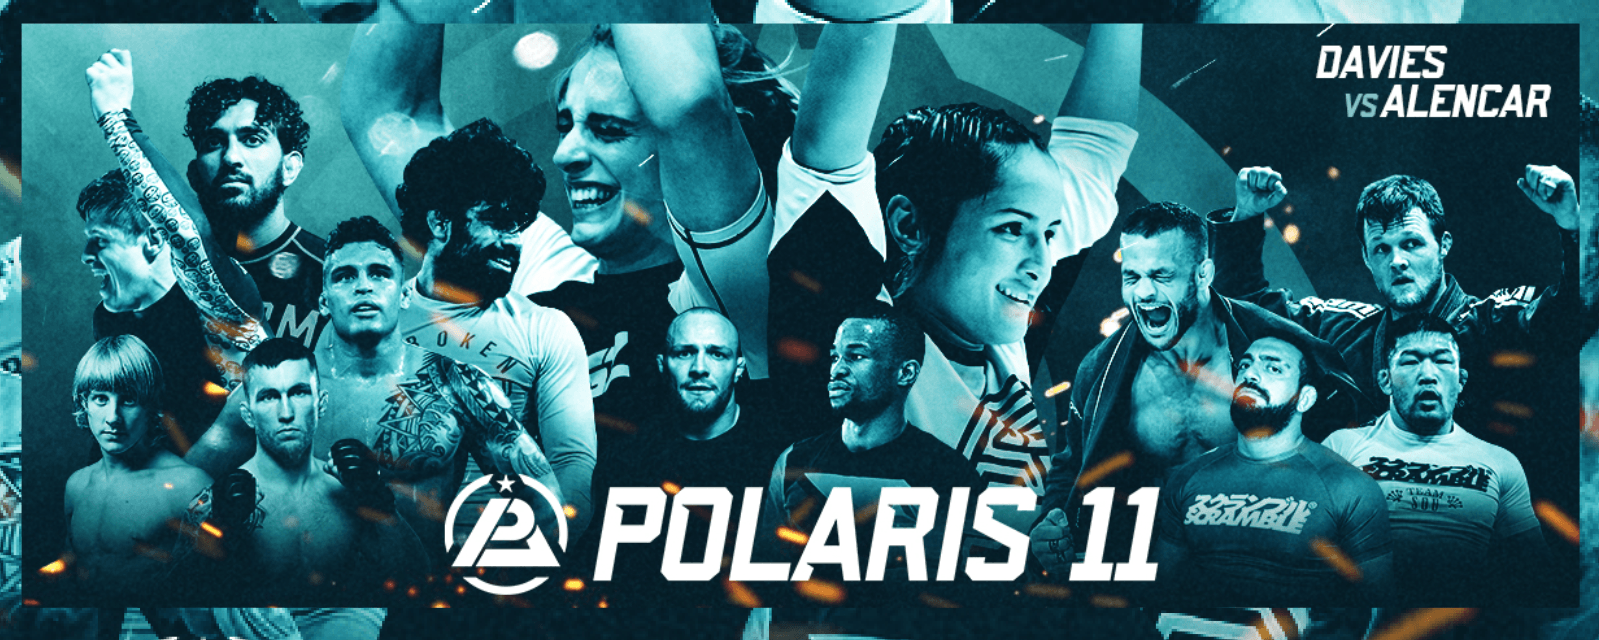 Polaris 11